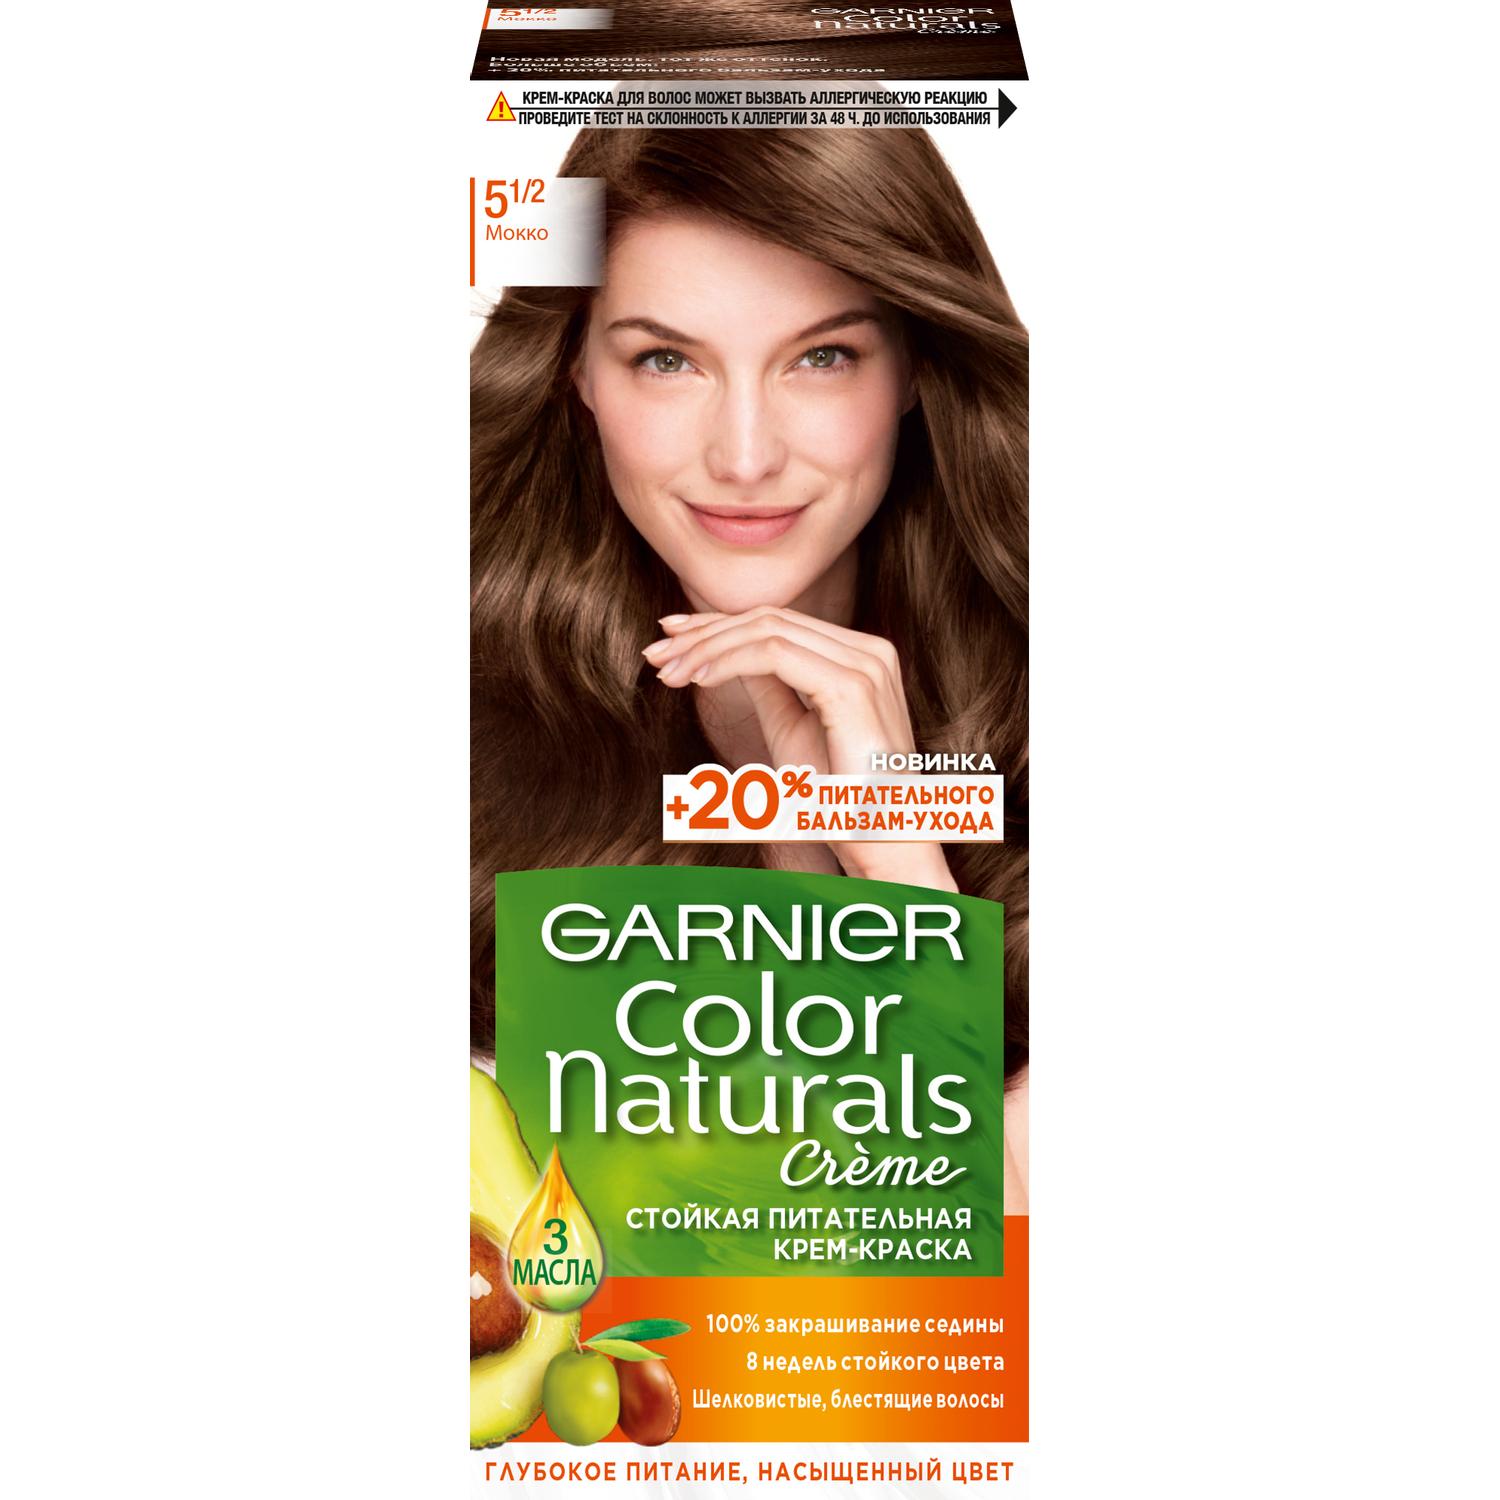 Крем-краска для волос Garnier Color Naturals 5.1/2 Мокко 110 мл крем краска для волос garnier color naturals 5 1 2 мокко 110 мл